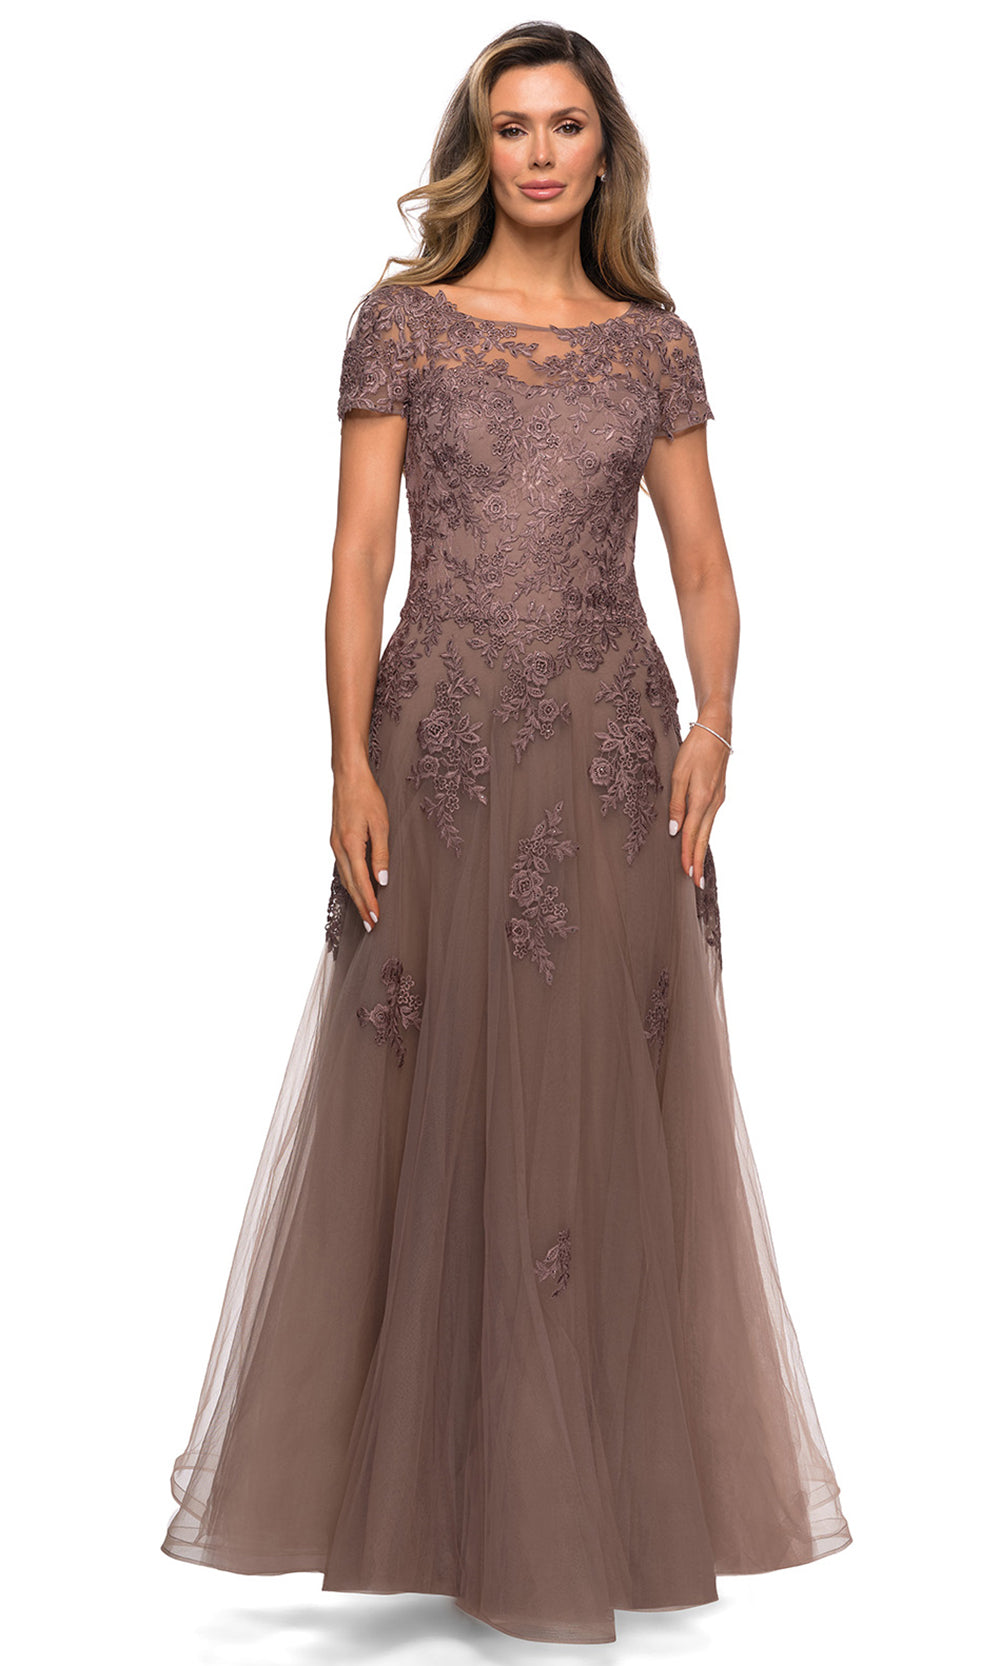 La Femme - 27958 Short Sleeve Floral Appliqued Tulle Dress In Brown